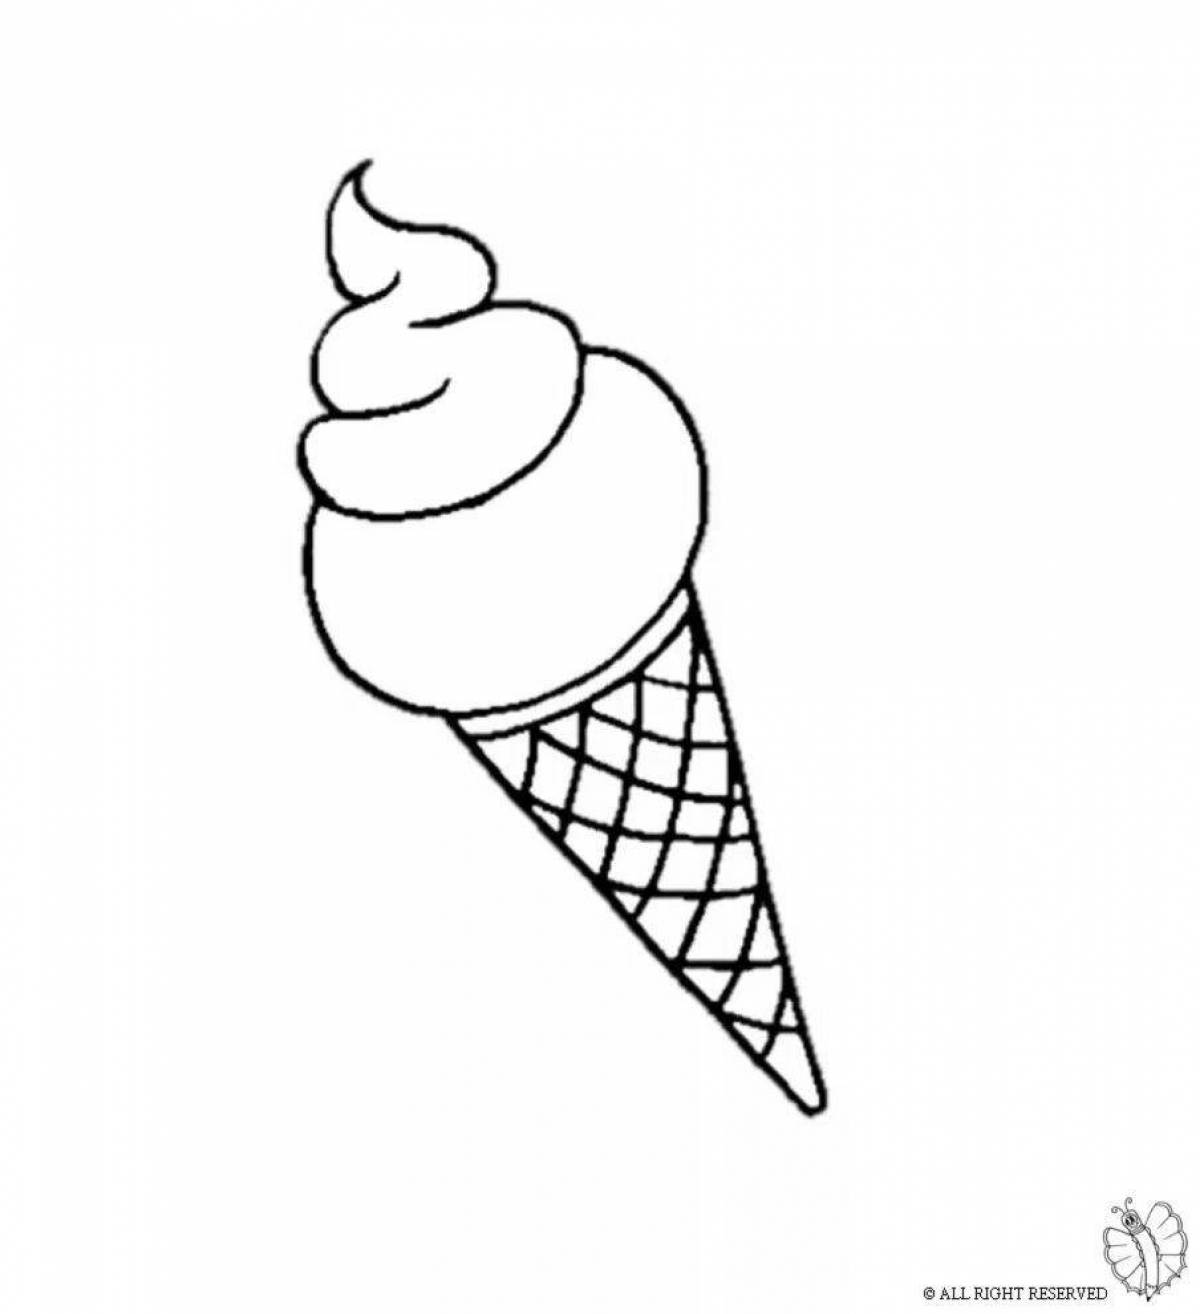 Coloured ice cream cone coloring book